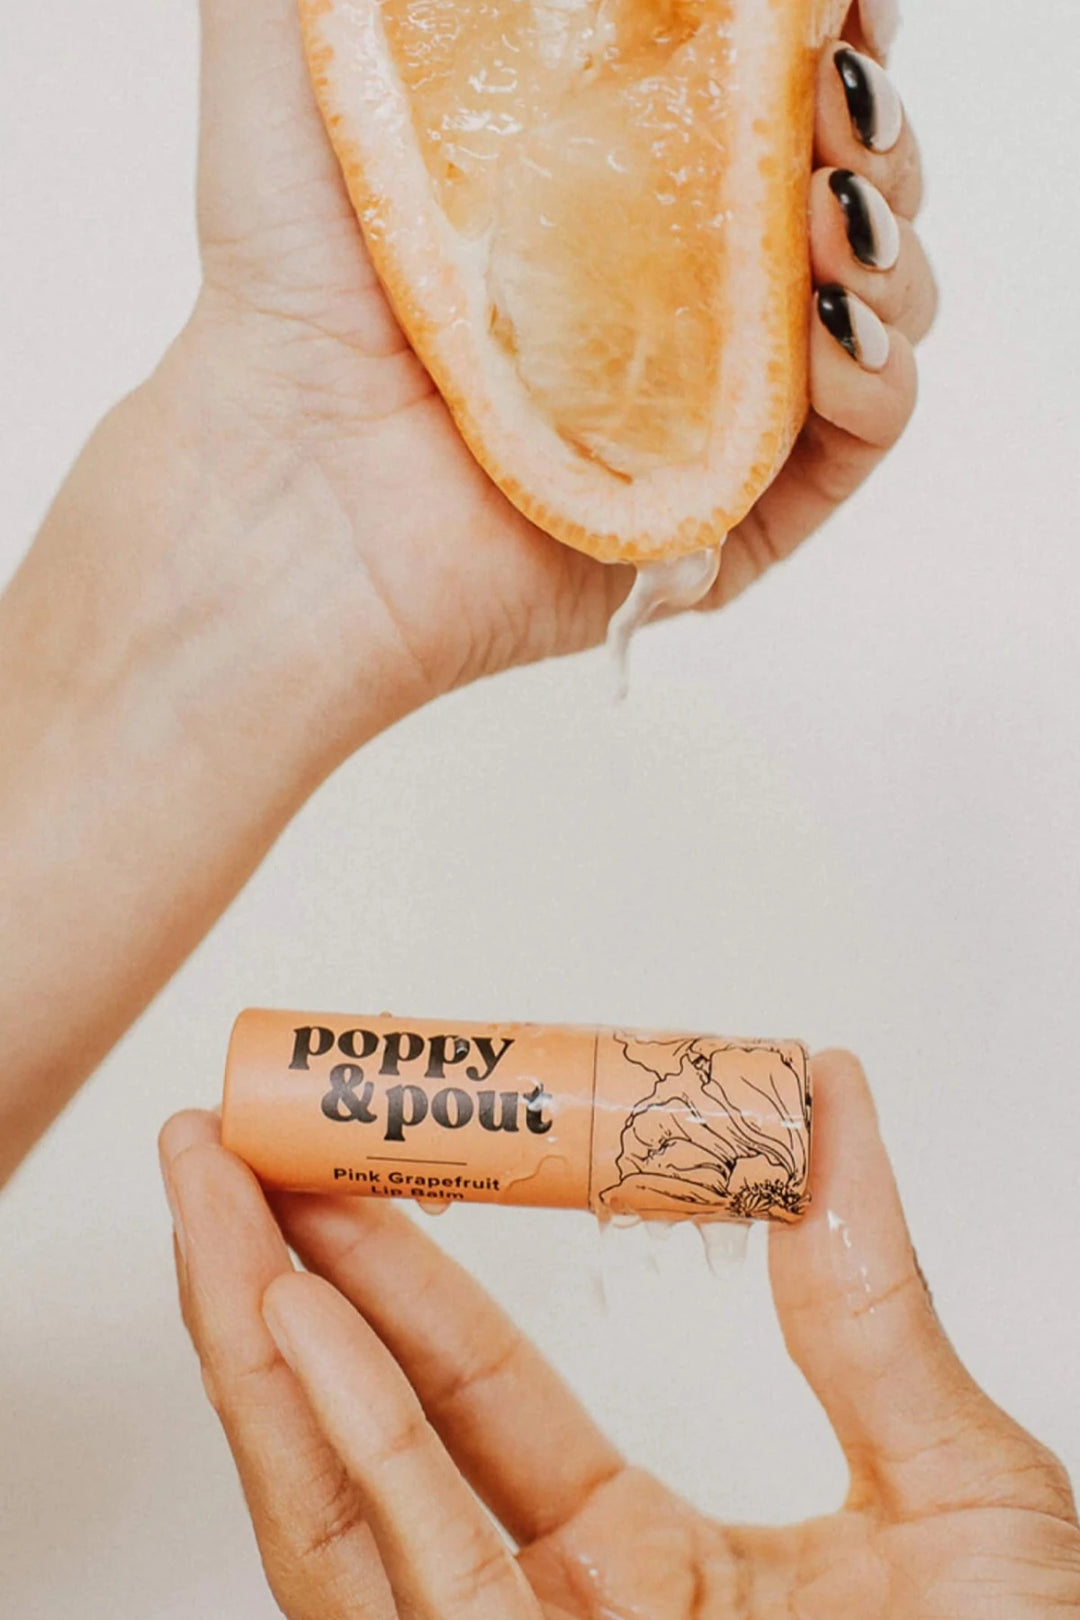 POPPY & POUT - LIP BALM - PINK GRAPEFRUIT